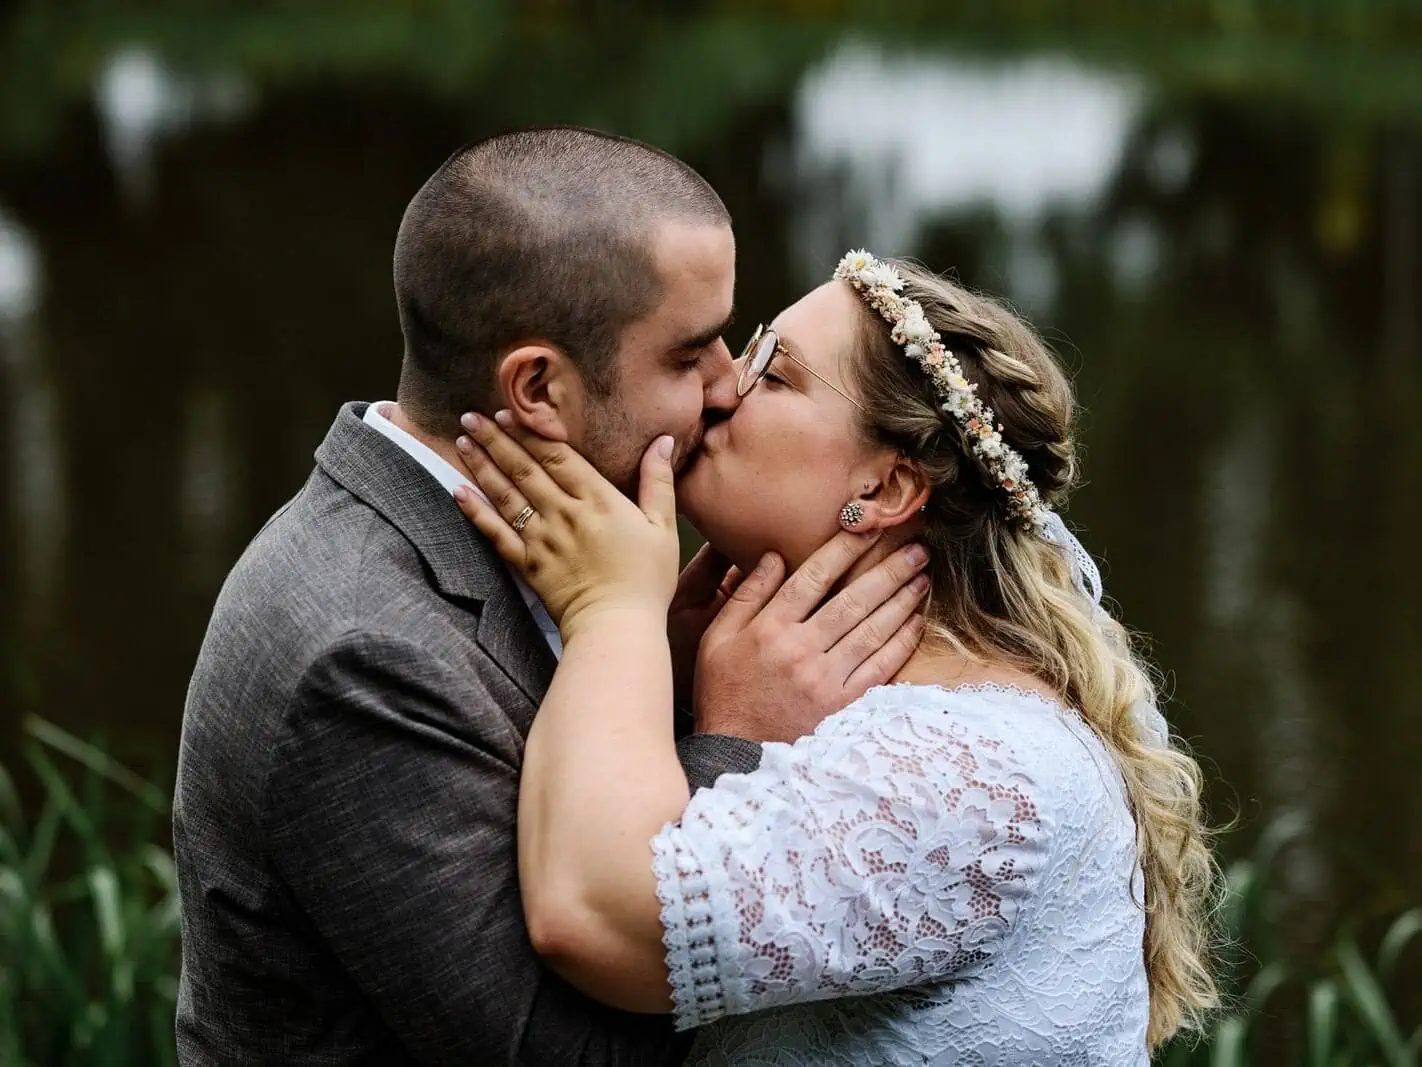 Intimer Kuss des Brautpaares im Park, Hände halten liebevoll die Gesichter fest. Idyllischer Teich im Hintergrund.